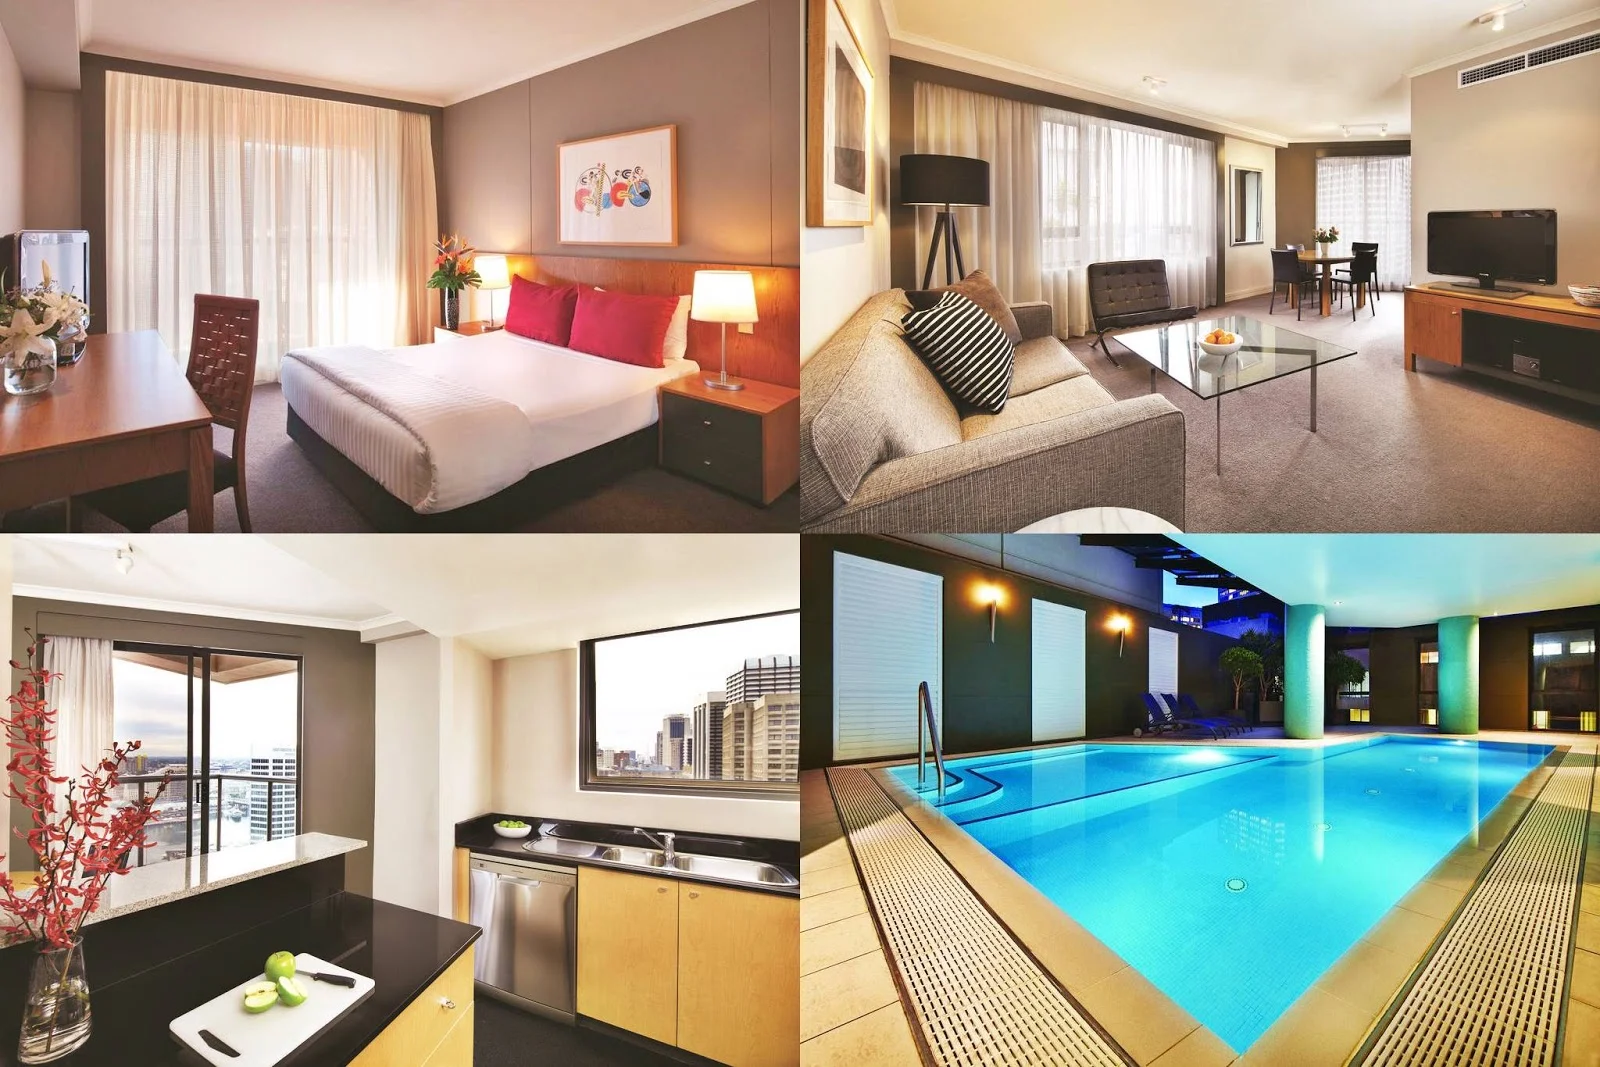 雪梨-住宿-推薦-悉尼阿迪納公寓酒店-Adina-雪梨飯店-雪梨旅館-雪梨酒店-雪梨公寓-雪梨民宿-澳洲-悉尼-Sydney-Hotel-Apartment-Travel-Australia